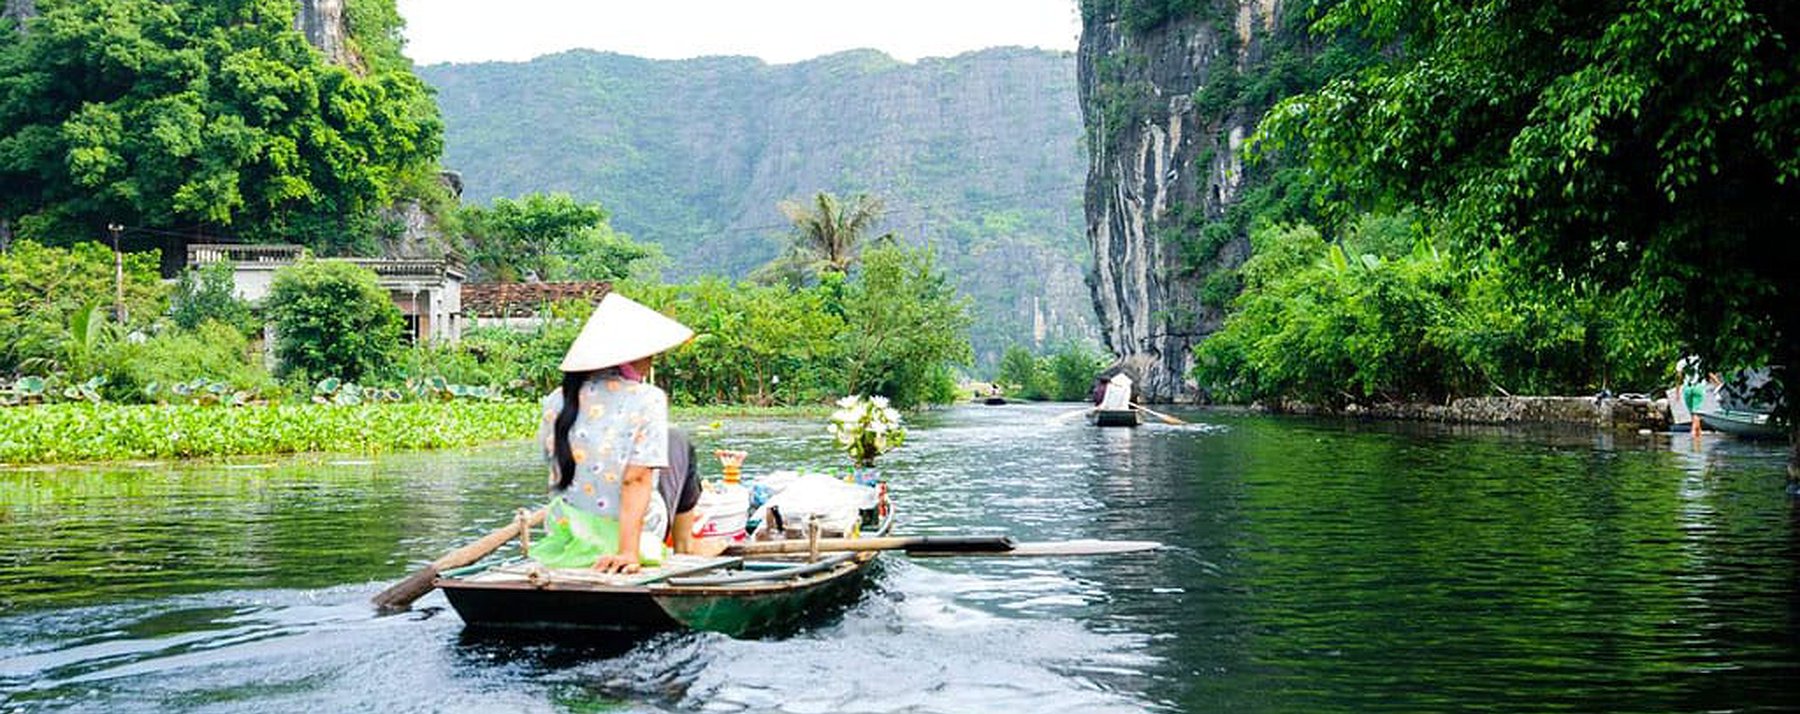 Отдых с детьми во вьетнаме - куда поехать? - дневник туриста